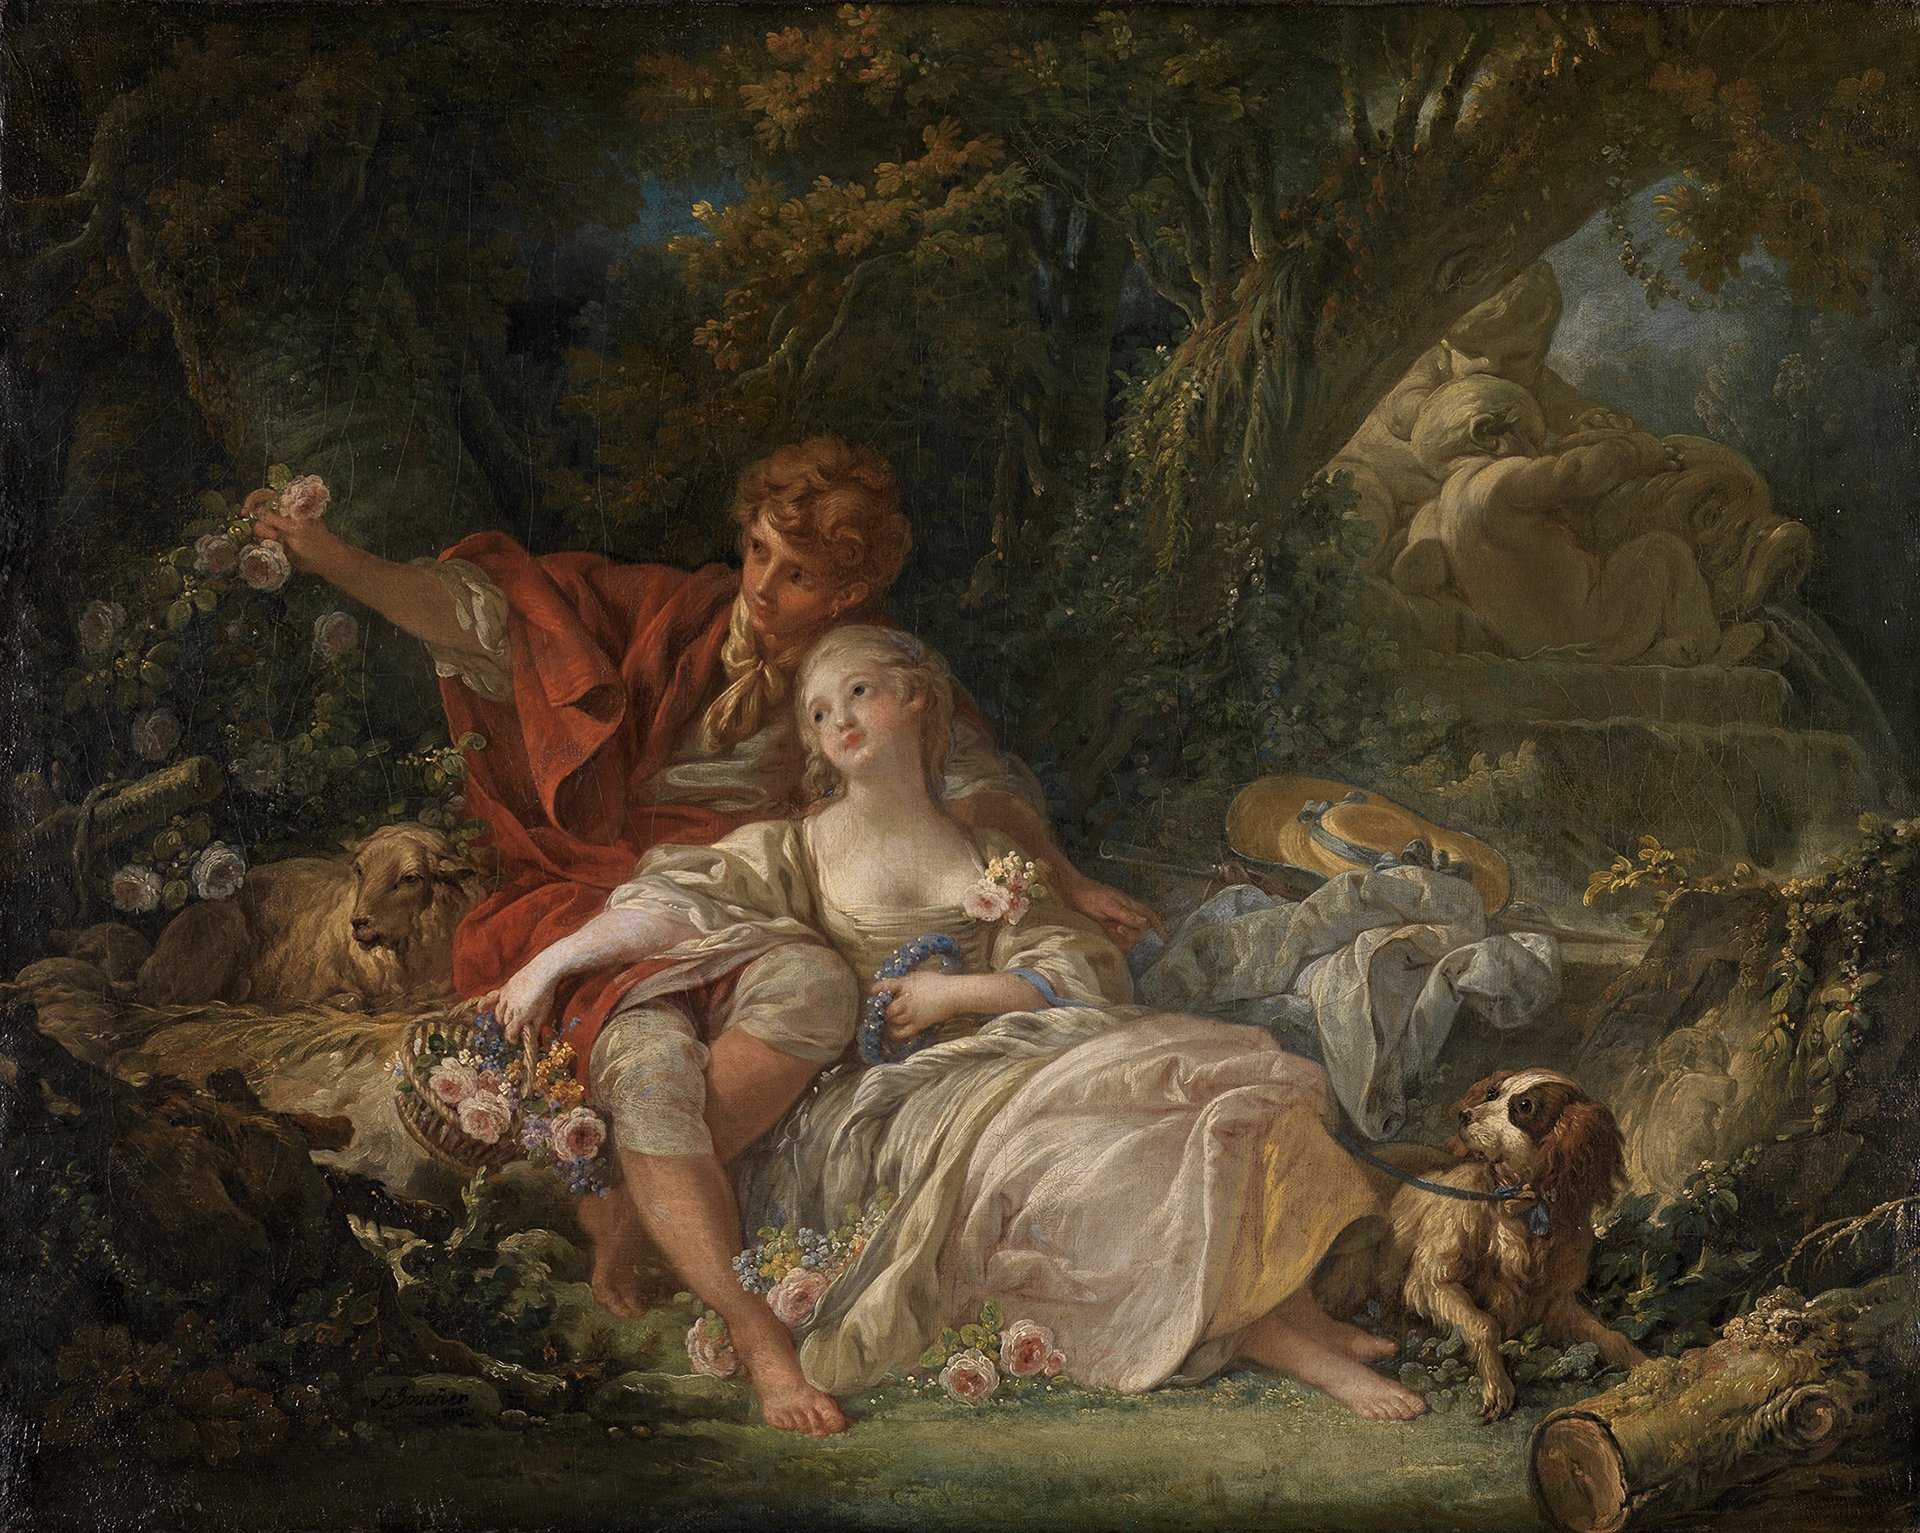 Abbildung des Werks "Schäfer und Schäferin" von François Boucher aus dem Jahr 1760. Es zeigt zwei Jugendliche, die vor einem Baum ruhen. Sie hält einen Hund an der Leine. Er pflückt eine Rose vom Busch.